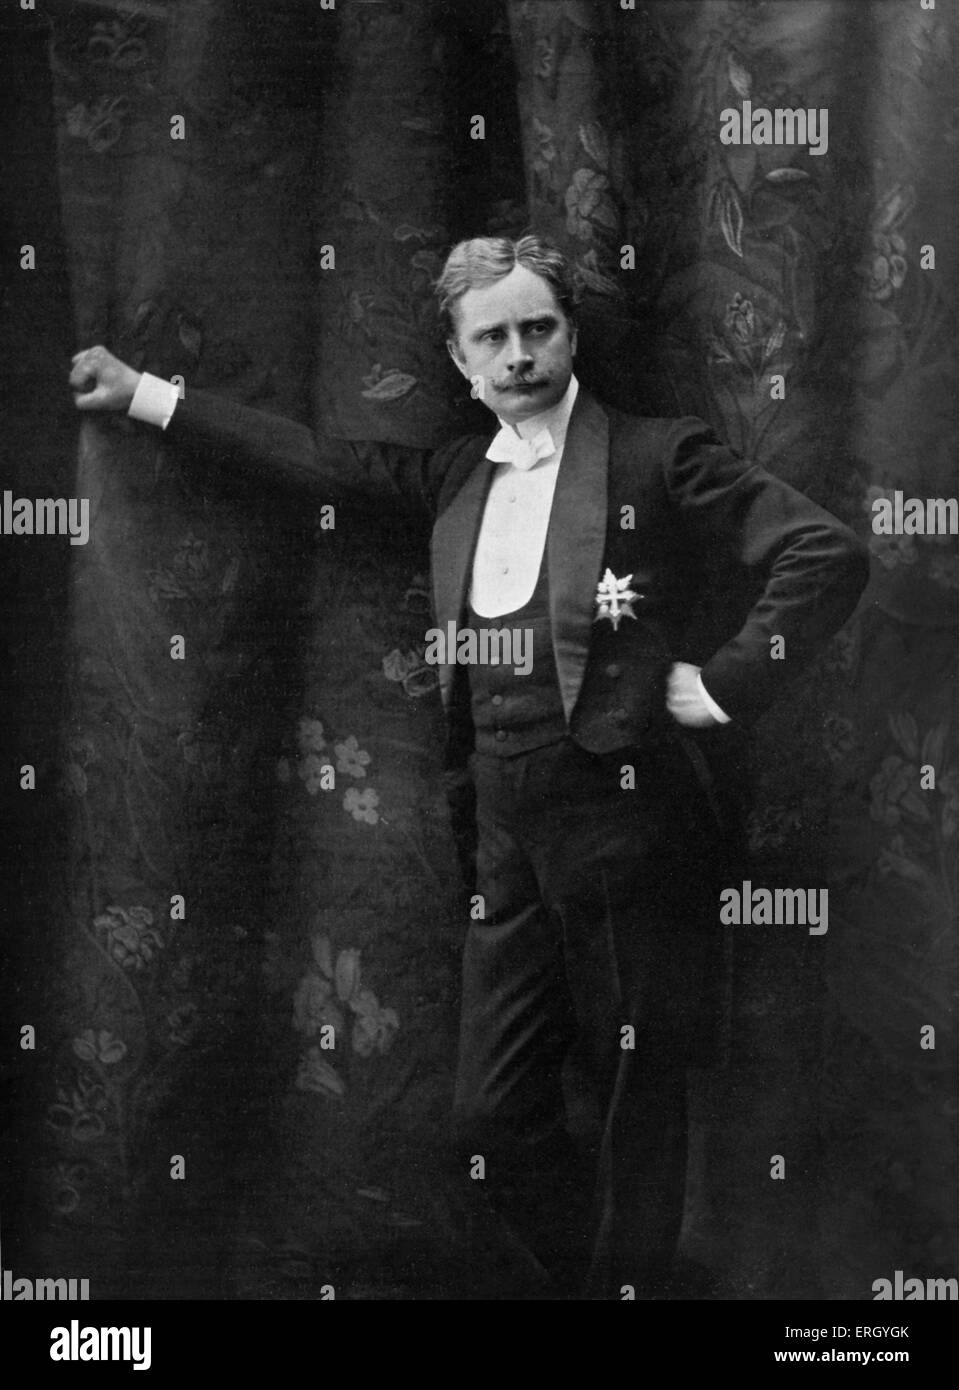 Charles le Bargy nel ruolo del Marchese de Priola- attore francese e inizio del direttore della pellicola, 28 agosto 1858 - 5 febbraio 1936. Foto Stock